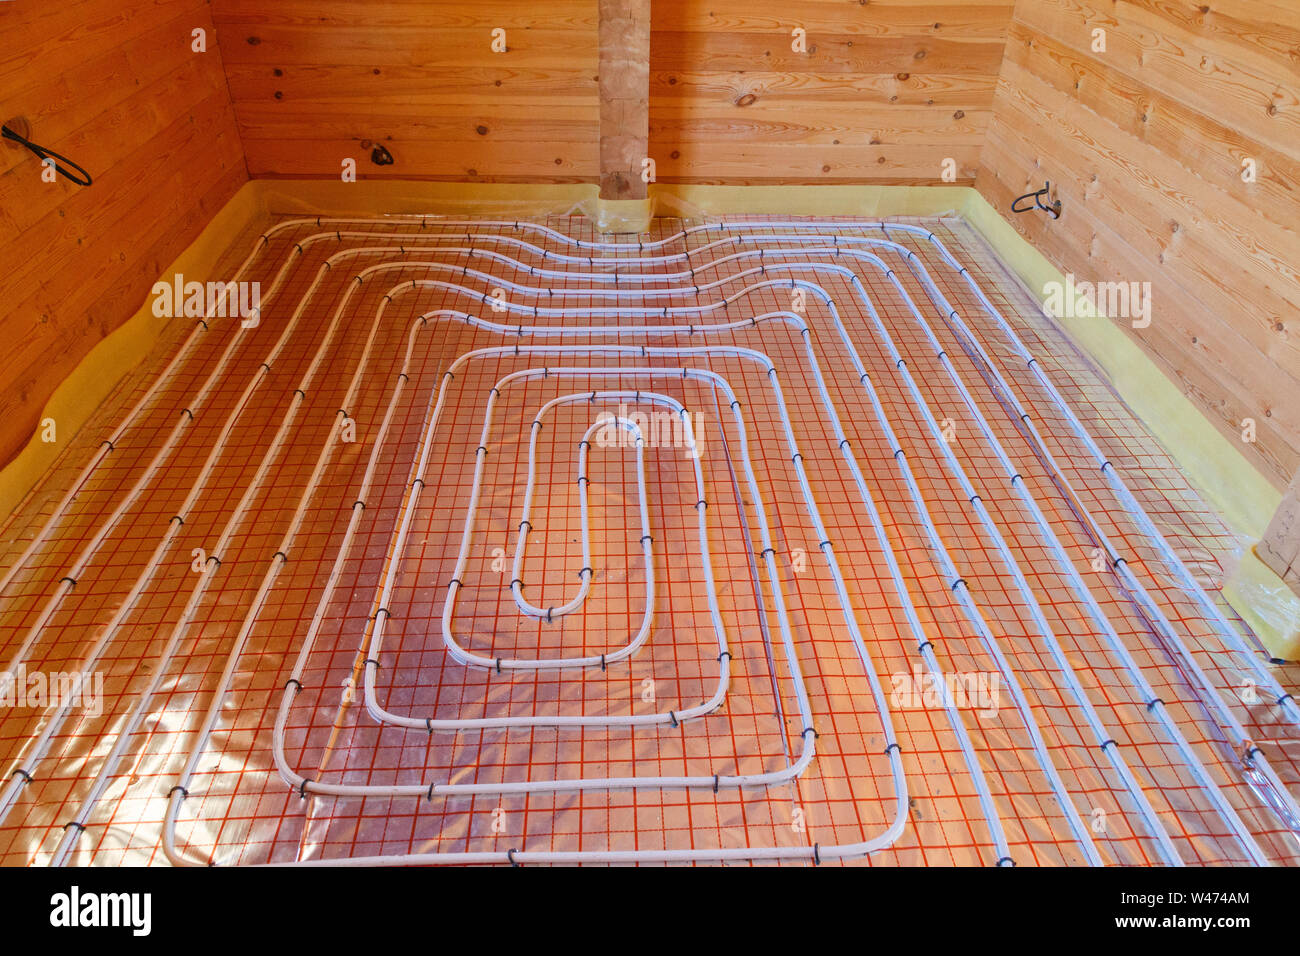 Eine Fußbodenheizung Flächenheizung Rohre. Niedrige Temperatur Heizung  Konzept Stockfotografie - Alamy